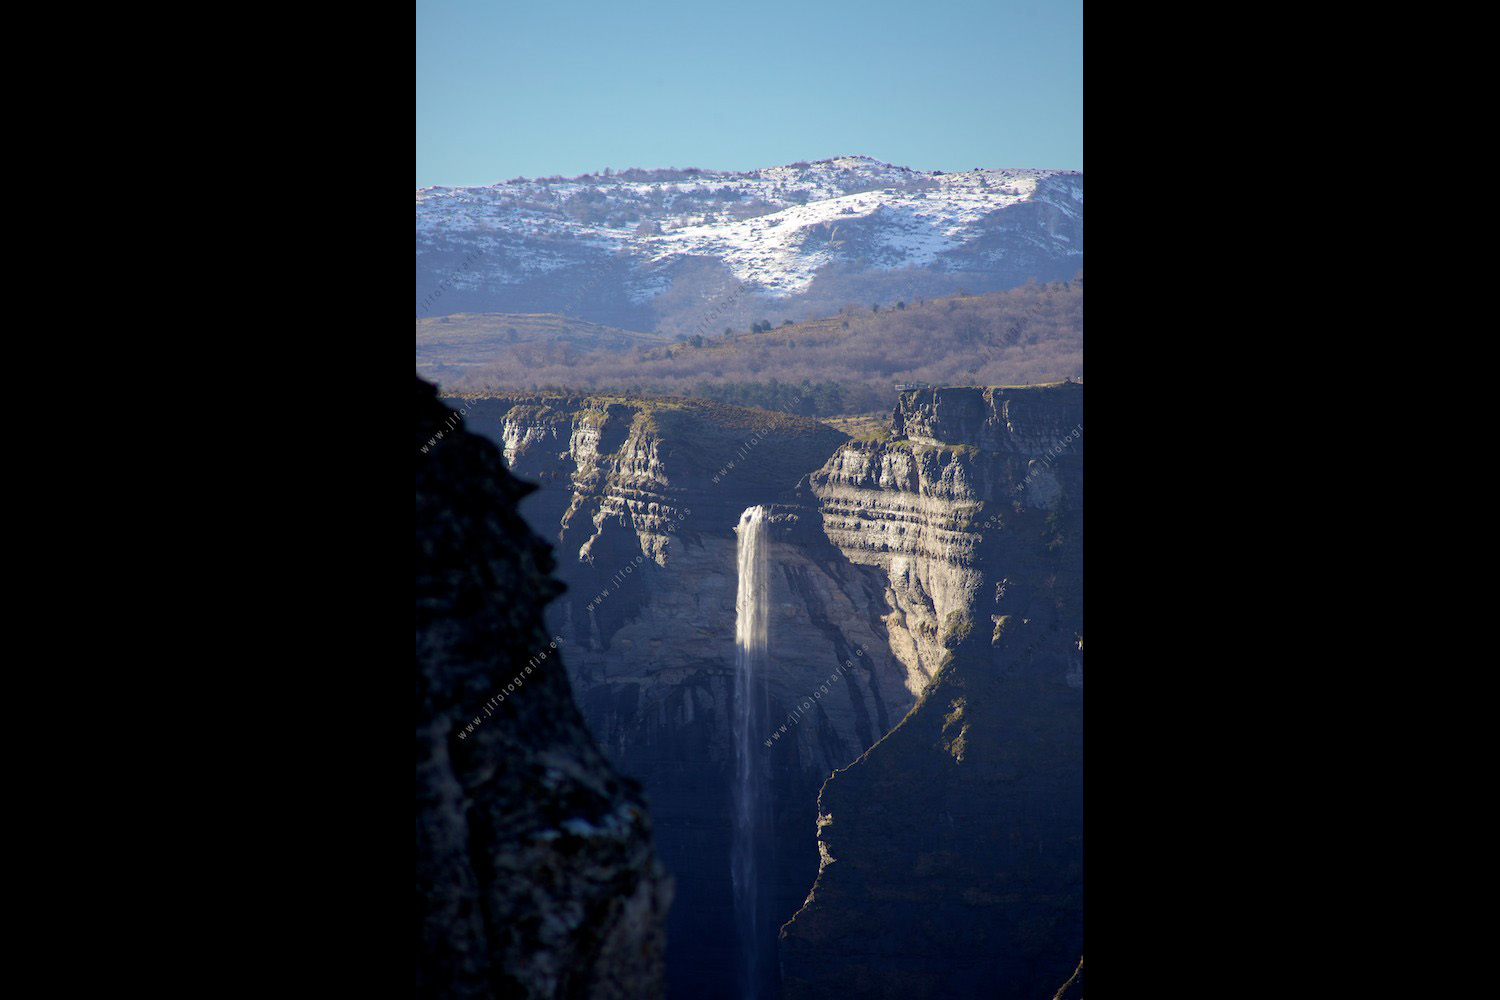 Fotografía de paisaje del salto del Nervión, en Delika, Bizkaia, siendo la cascada más alta de España con unos 200 metros de altura.